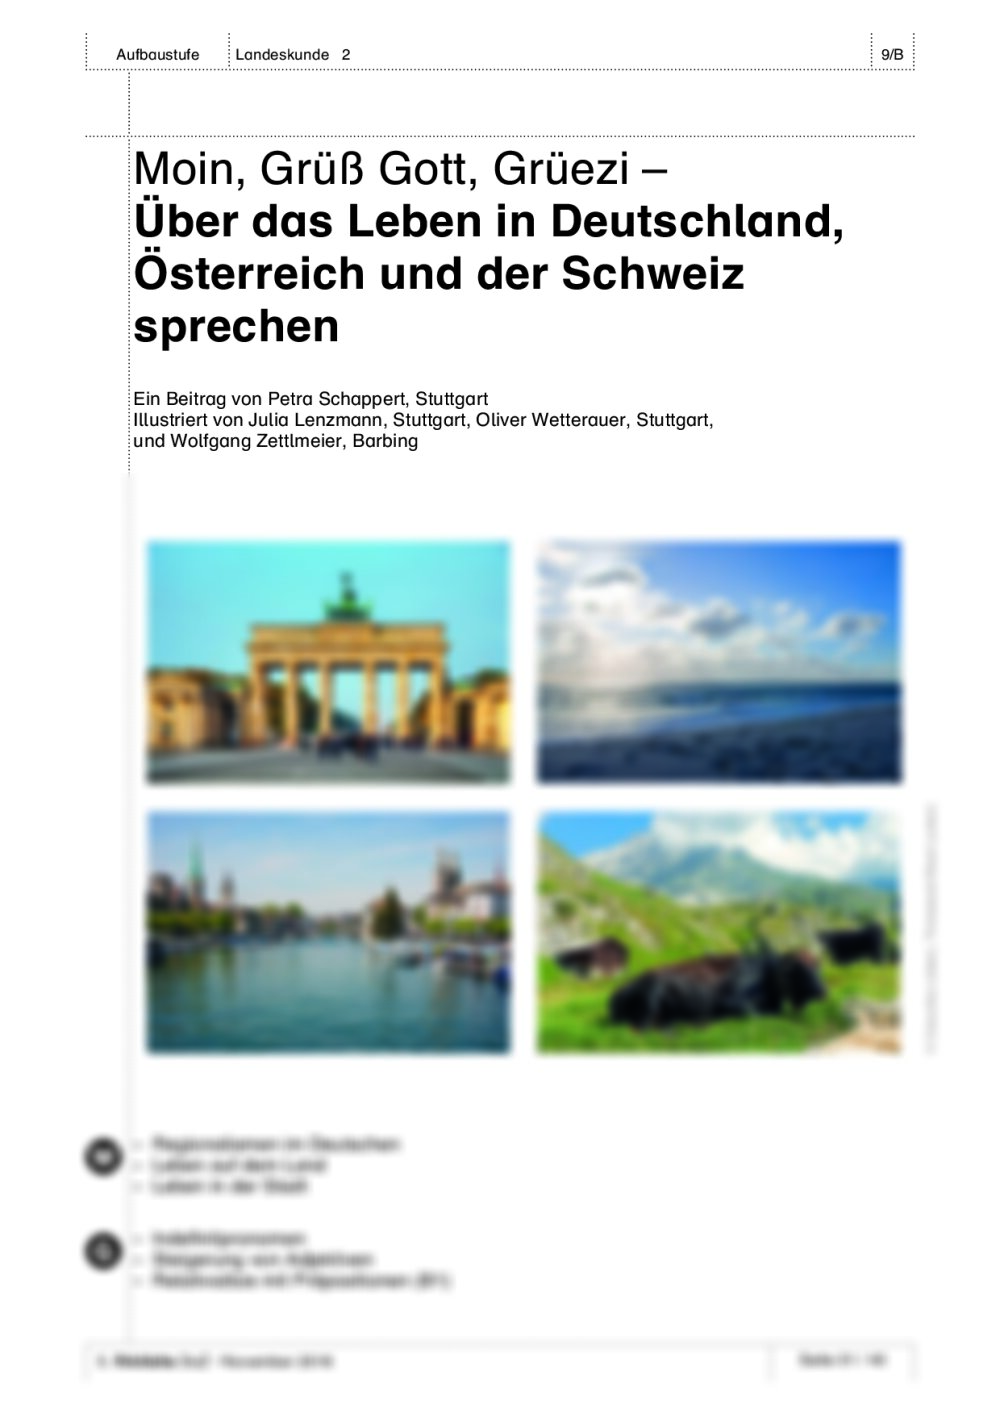 Über das Leben in Deutschland, Österreich und der Schweiz sprechen - Seite 1